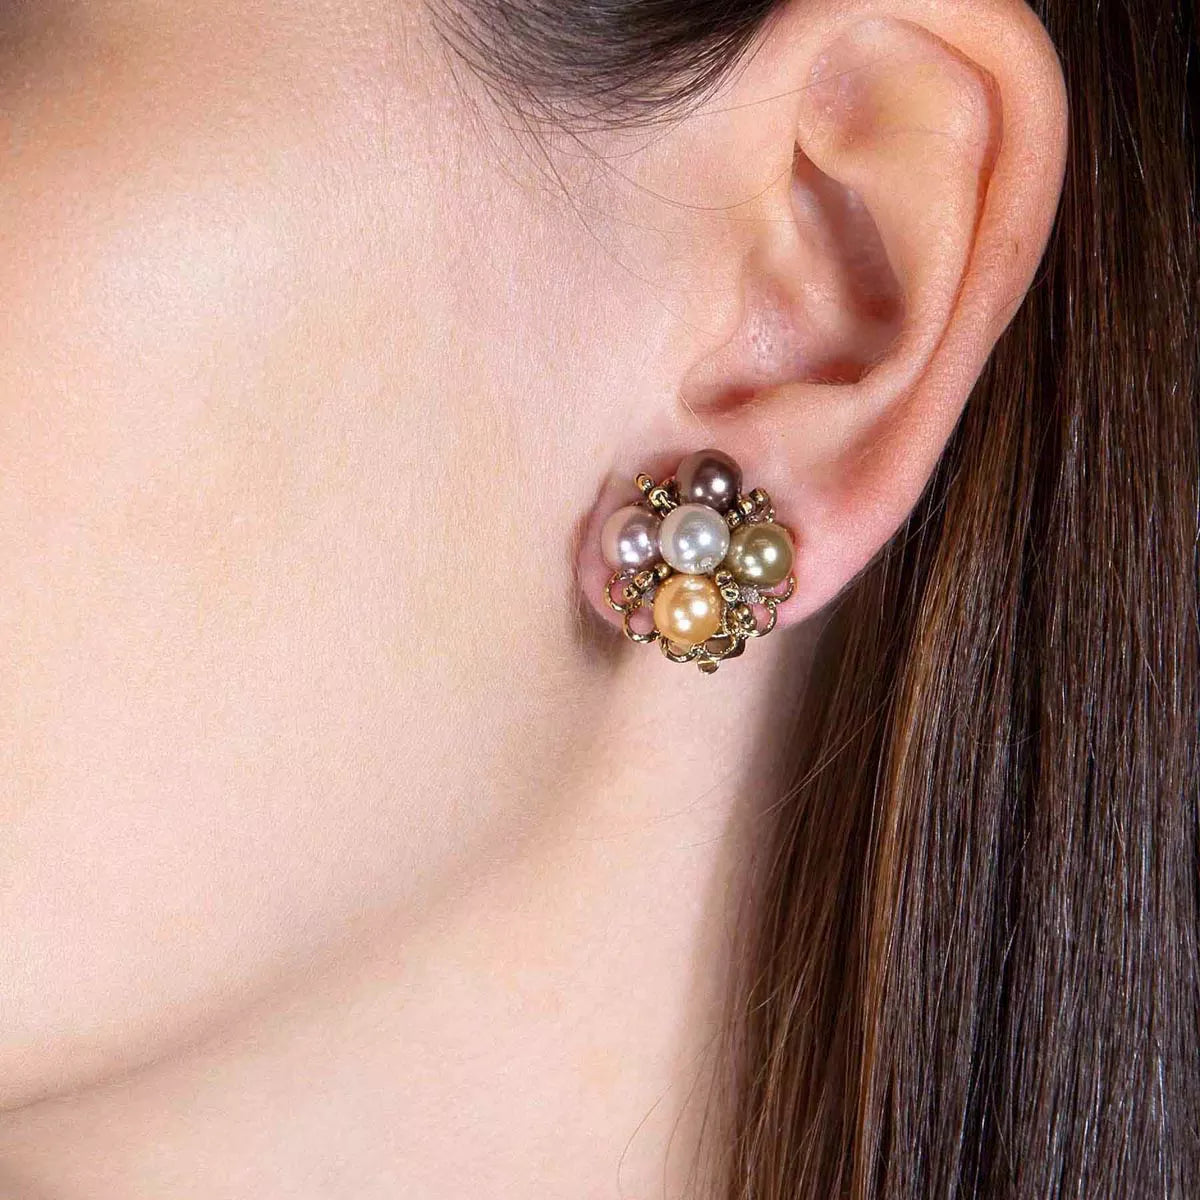 Colorful pearl earrings